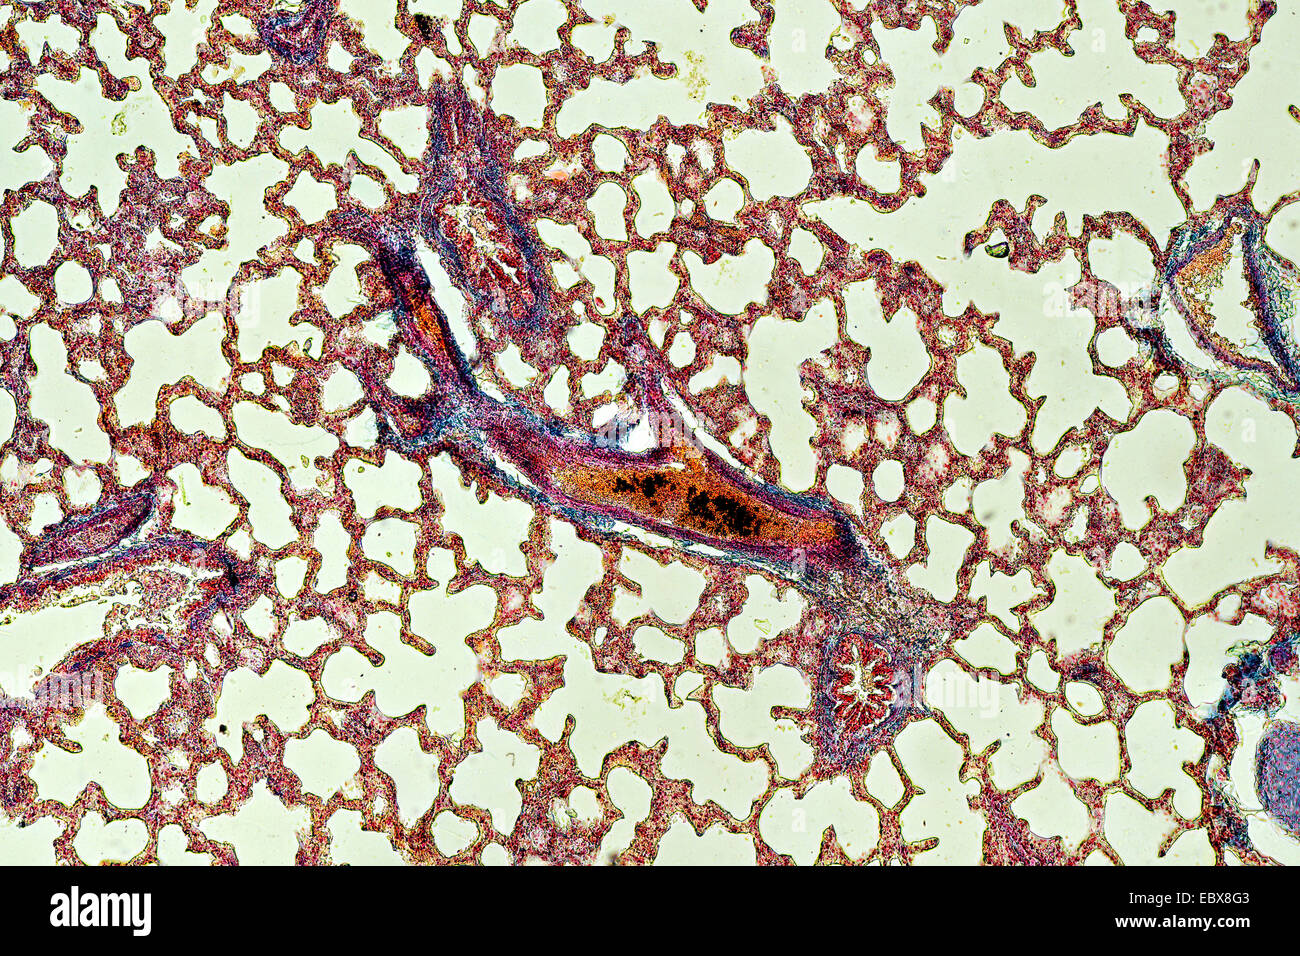 Sezione trasversale del polmone con bronchioli, alveoli e vasi sanguigni visibili Foto Stock